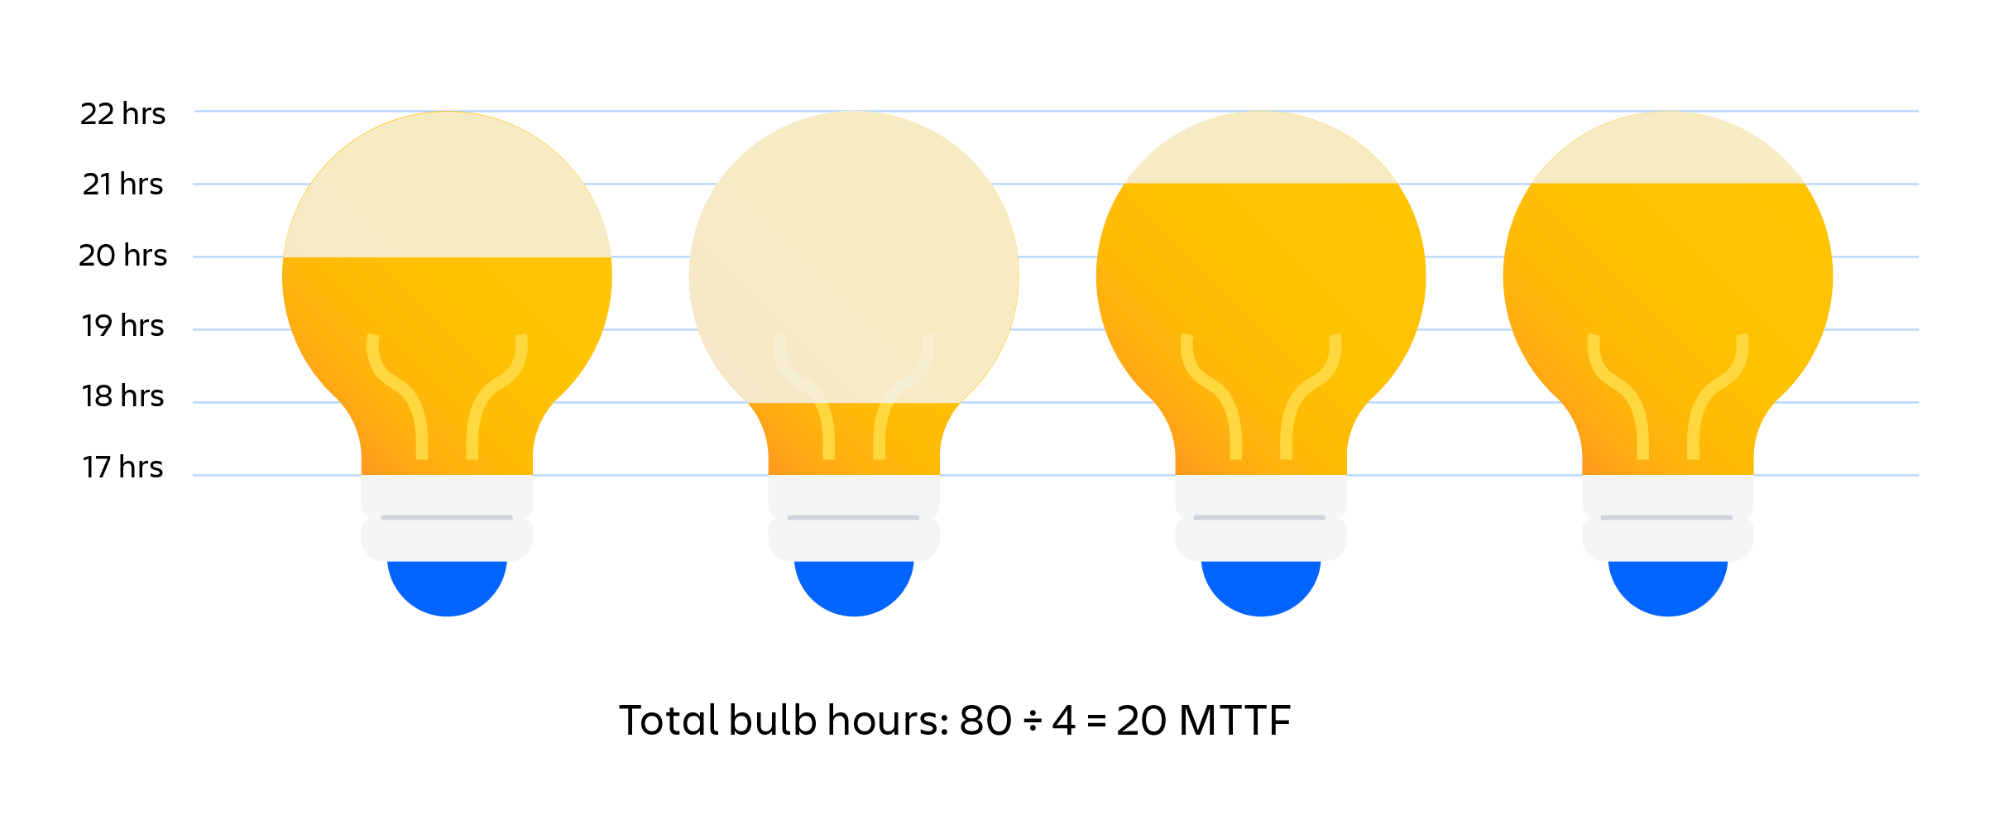 Exemplo visual do cálculo do MTTF de lâmpadas. O total de horas acesas das lâmpadas dividido pelo número de lâmpadas é igual ao MTTF (tempo médio sem falhas)